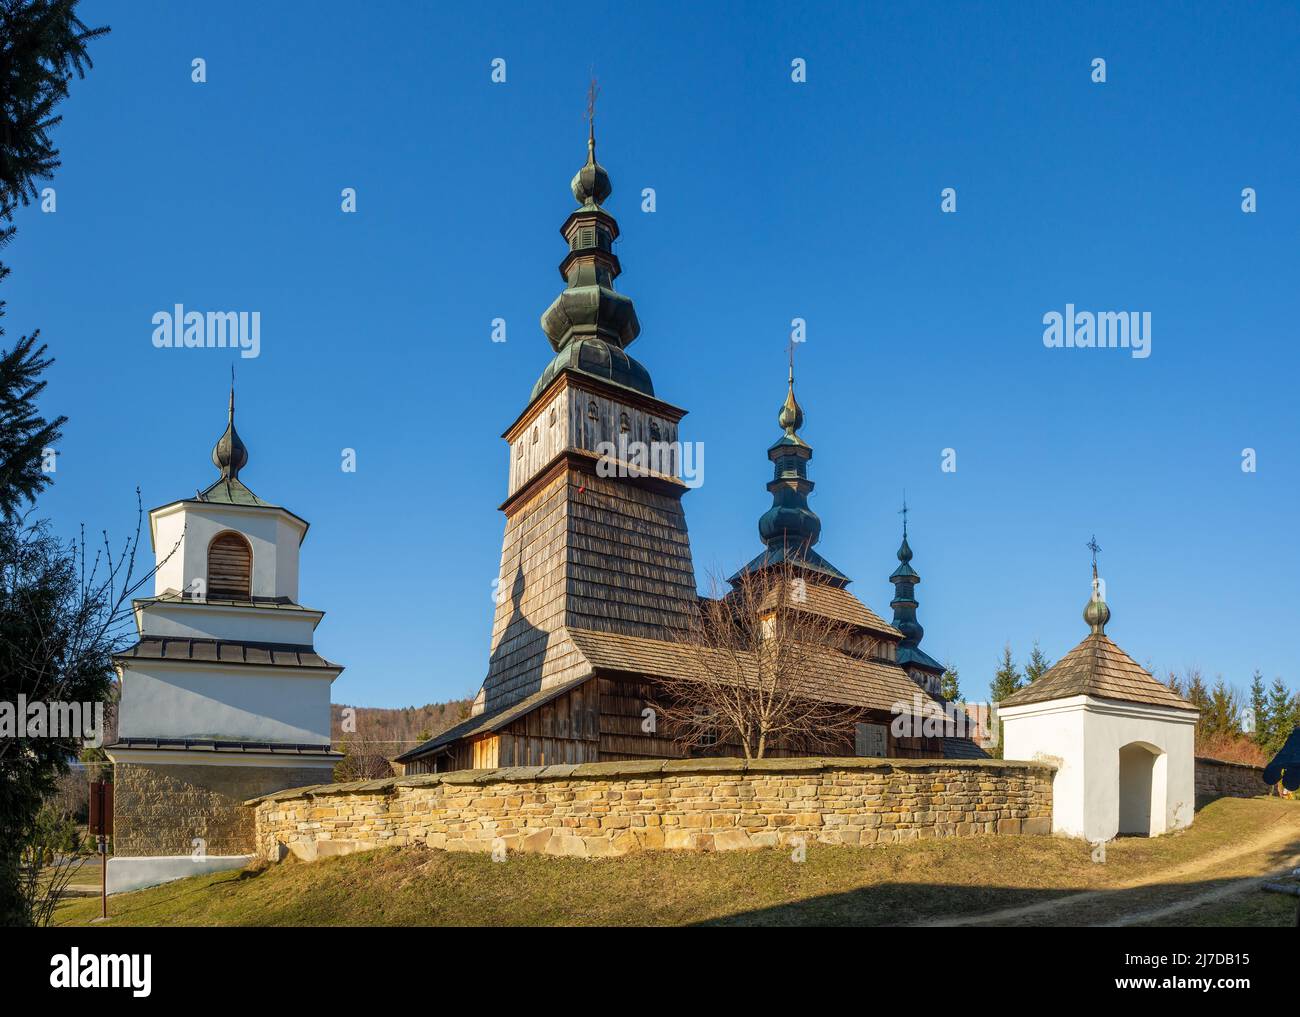 Alte orthodoxe Kirche in Owczary, Polen. Erbaut im 17.. Jahrhundert. Jetzt sowohl als römisch-katholische und griechisch-katholische Kirche verwendet. UNESCO-Weltkulturerbe Stockfoto